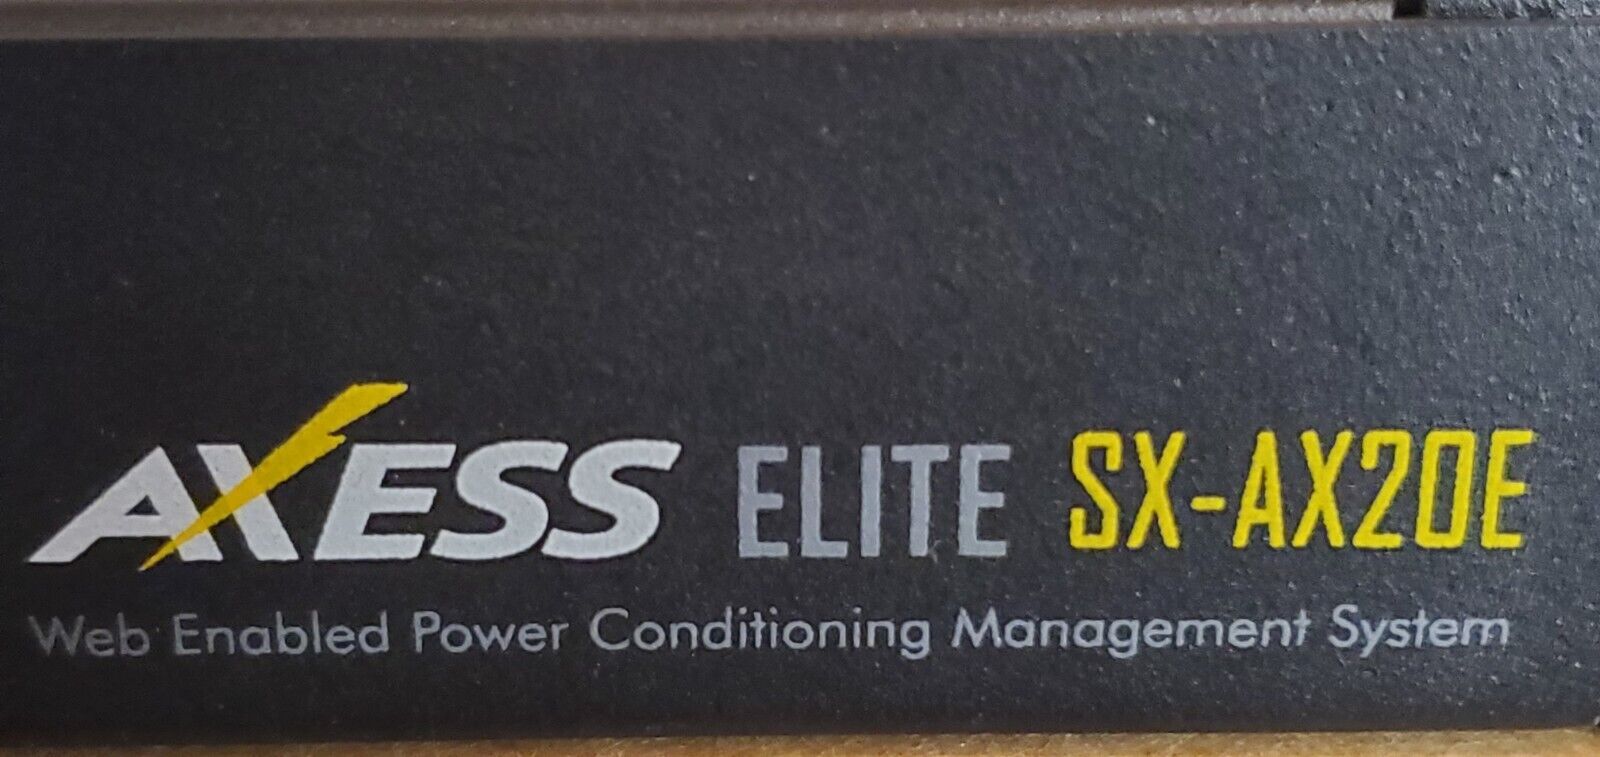 20 Amp SurgeX Axess Elite SX-AX20E Power Conditioner Surge Suppressor web enable